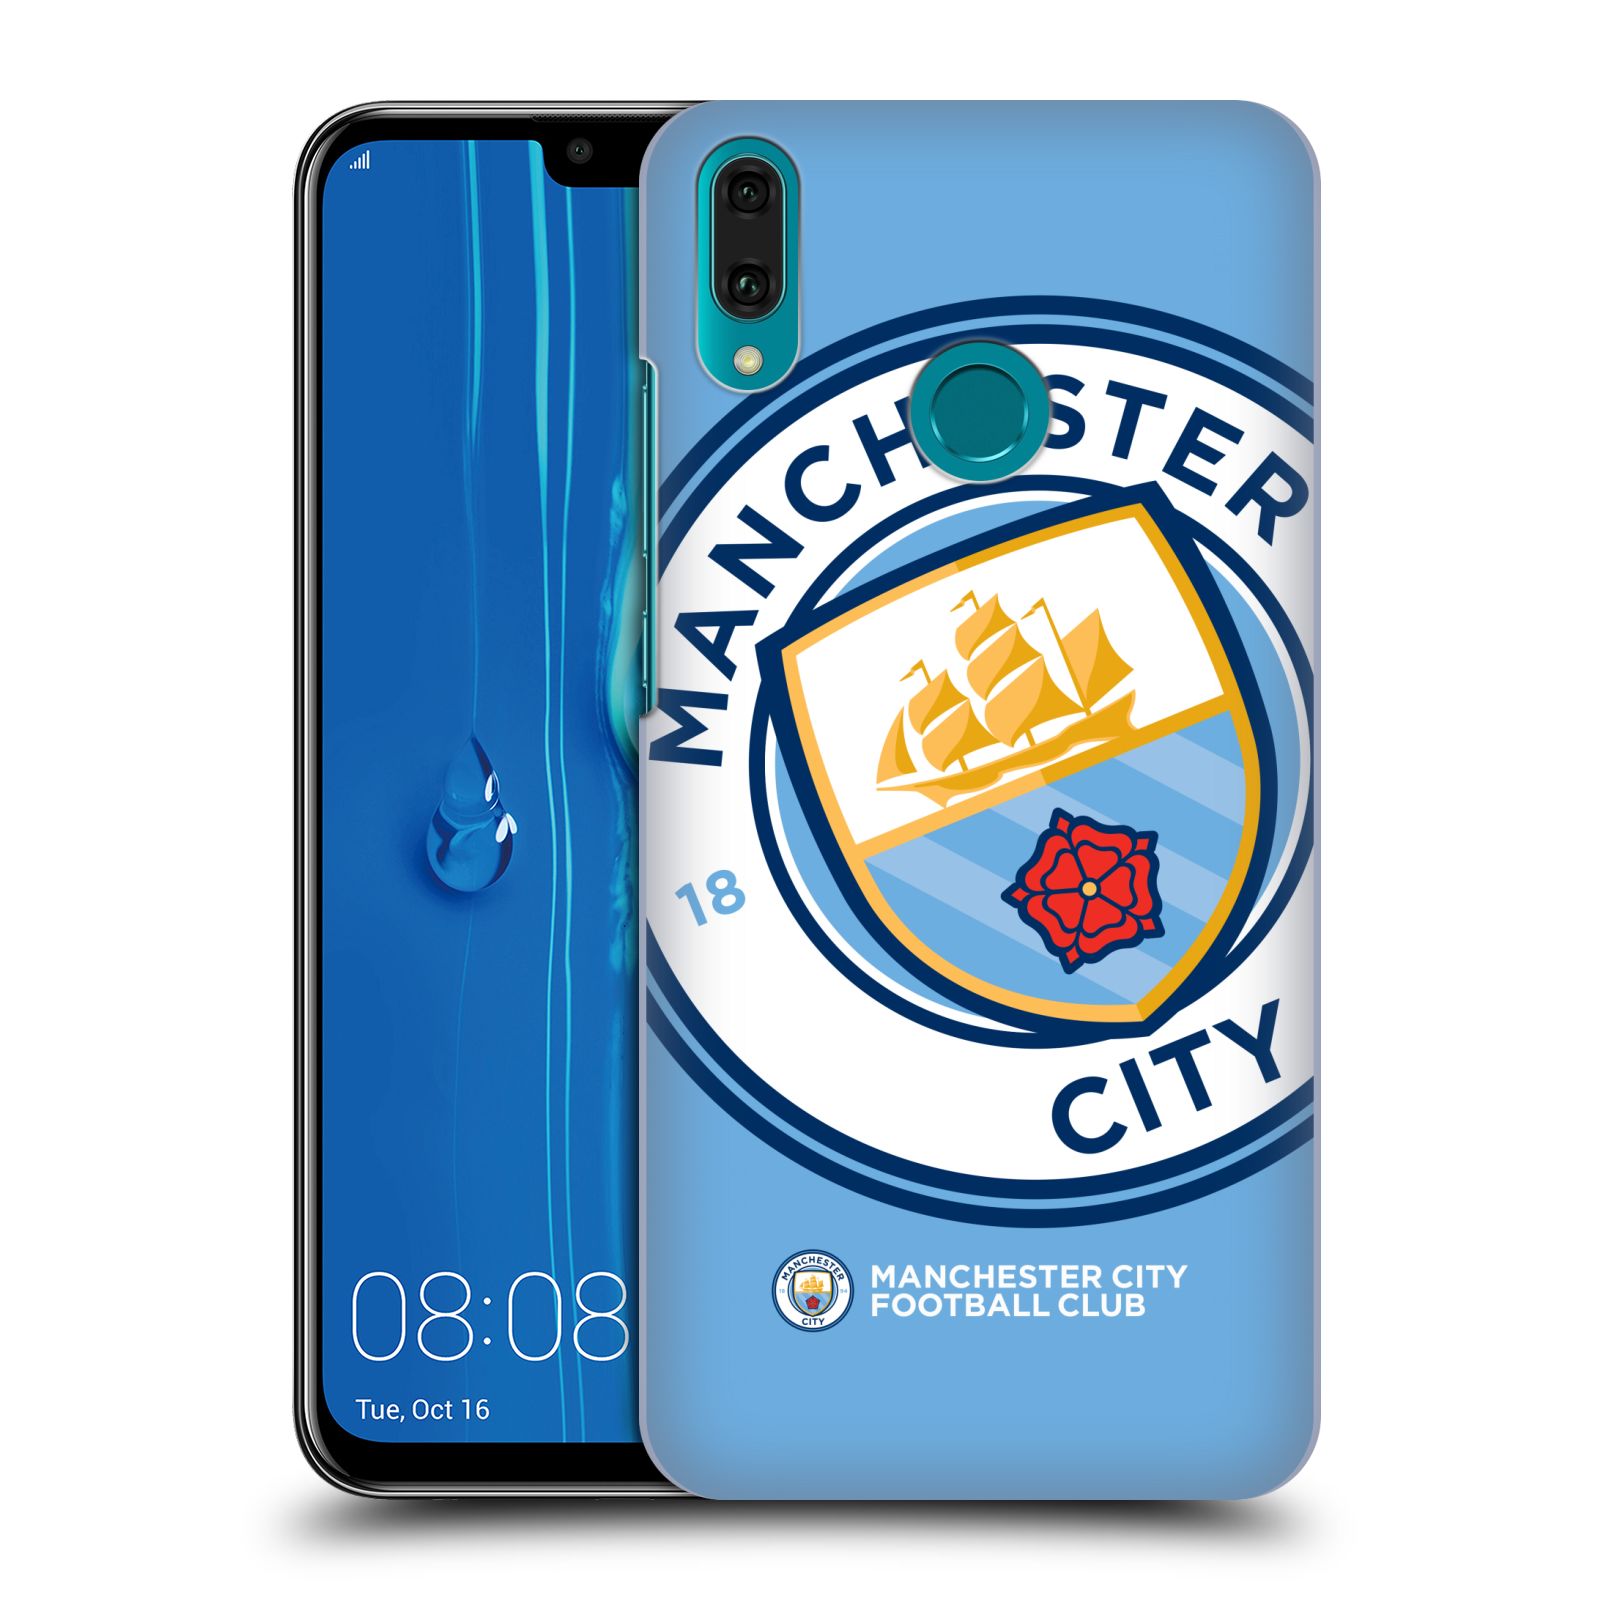 Pouzdro na mobil Huawei Y9 2019 - HEAD CASE - Fotbalový klub Manchester City modrý velký přesahující znak